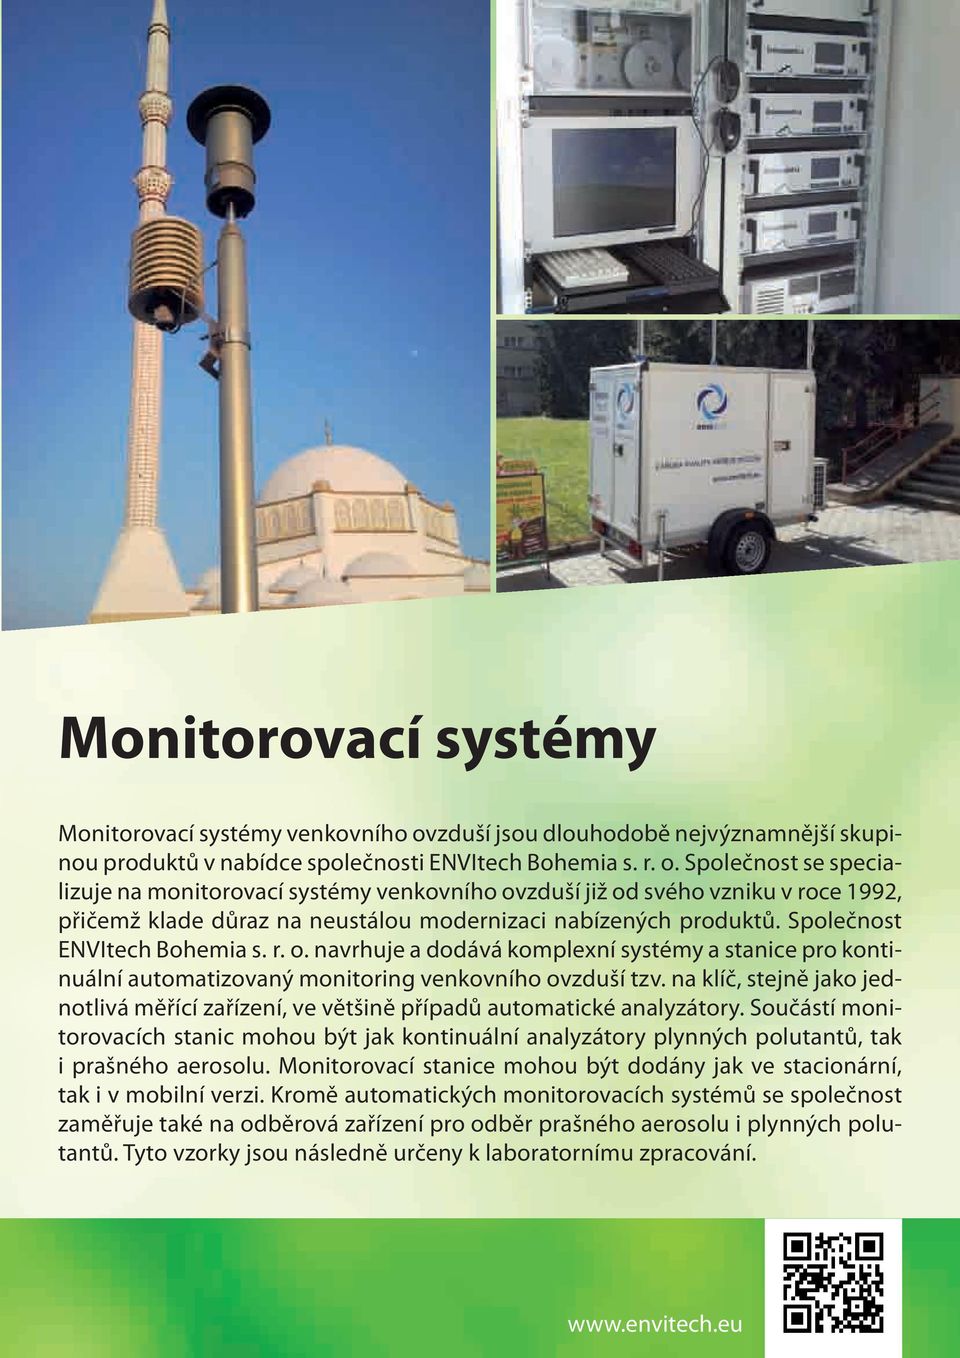 Společnost se specializuje na monitorovací systémy venkovního ovzduší již od svého vzniku v roce 1992, přičemž klade důraz na neustálou modernizaci nabízených produktů. Společnost ENVItech Bohemia s.